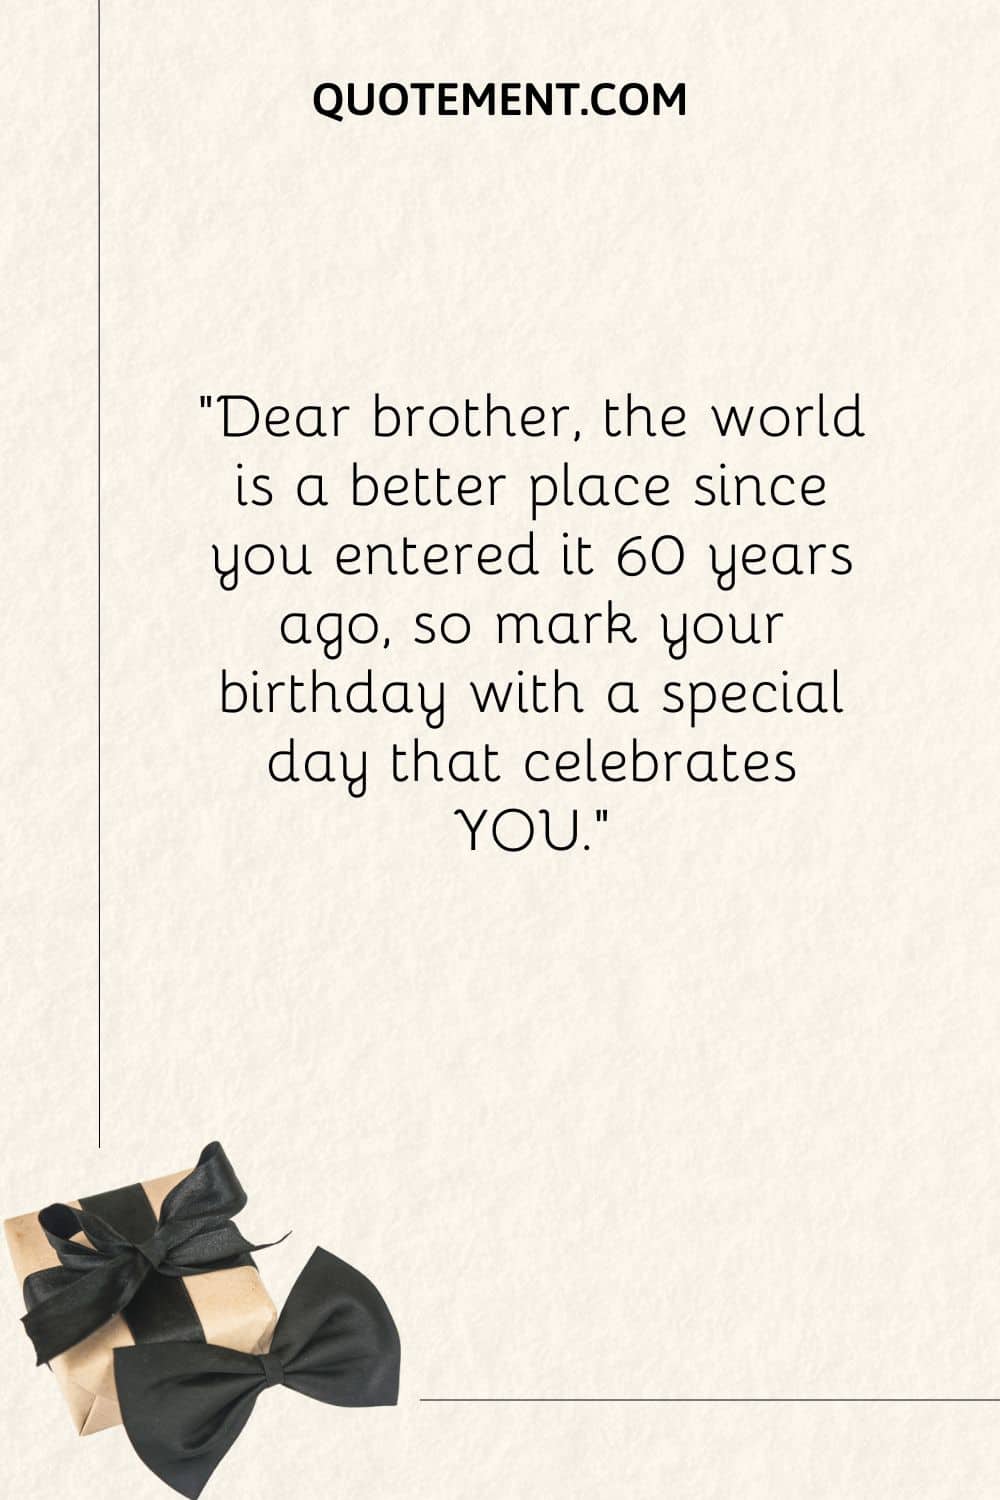 Querido hermano, el mundo es un lugar mejor desde que entraste en él hace 60 años, así que celebra tu cumpleaños con un día especial que te celebre a TI.